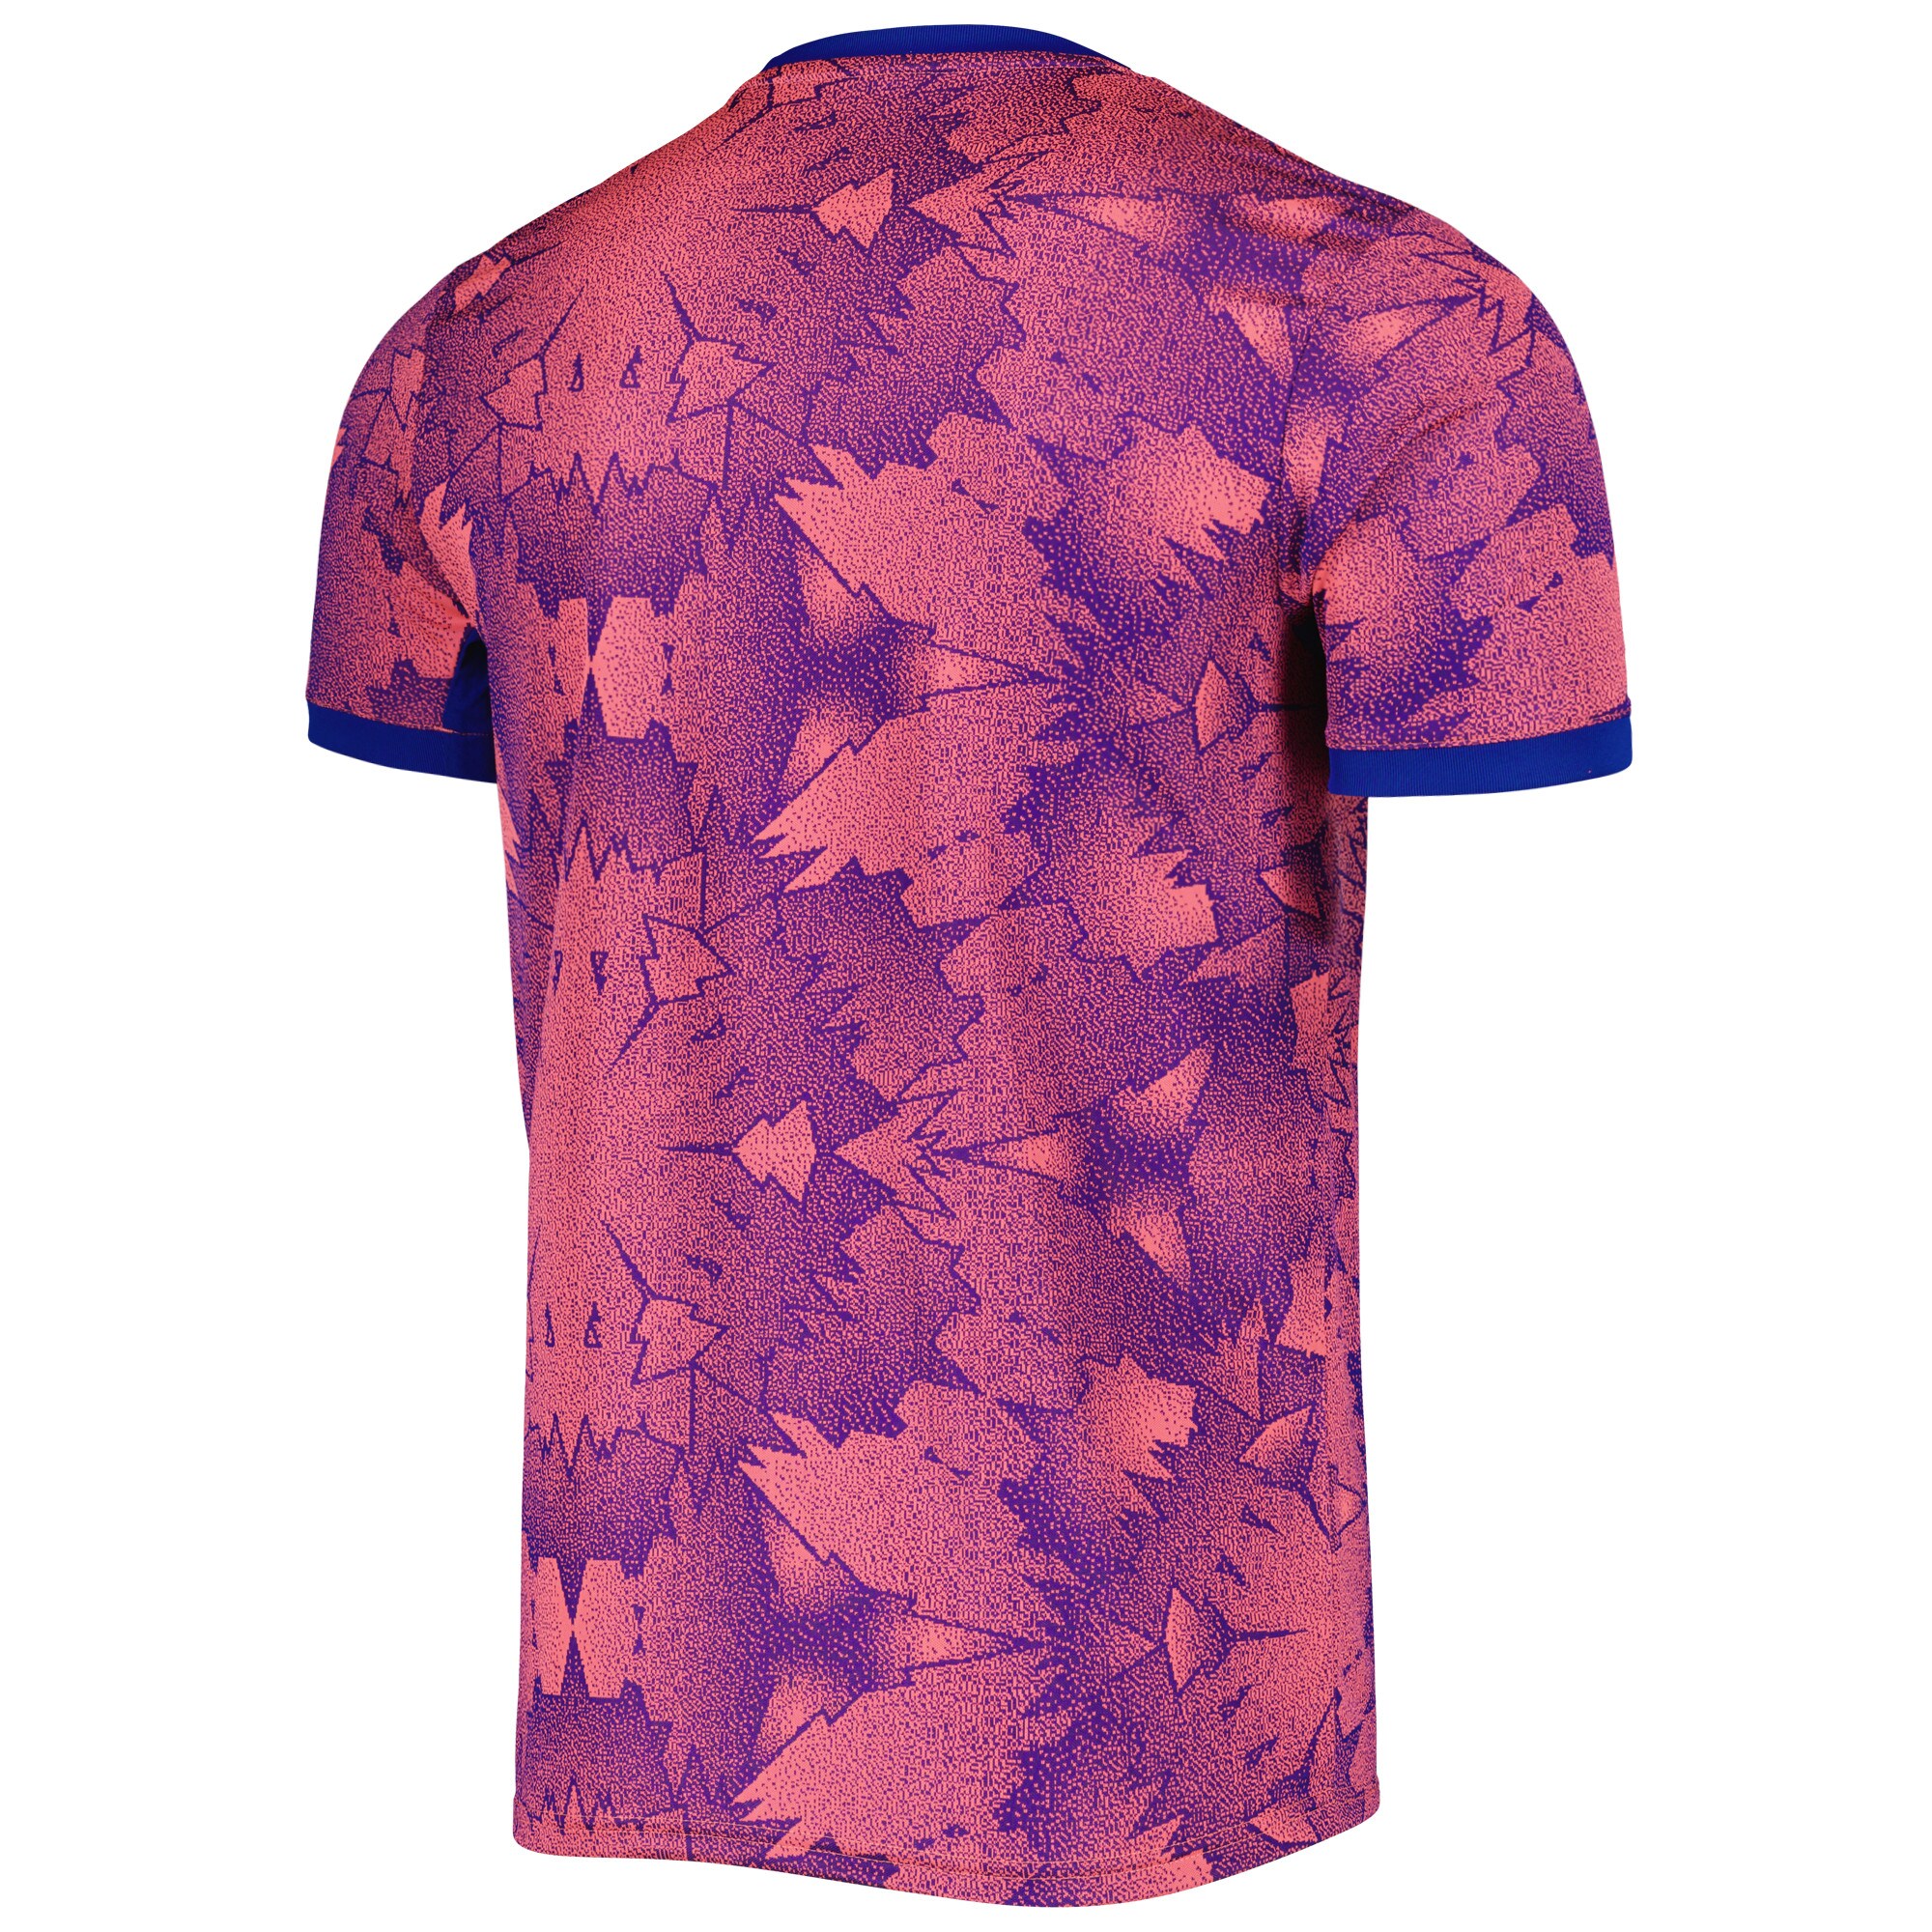 Men's Juventus Jerseys Pink/Blue 2022/23 Third Printed Style